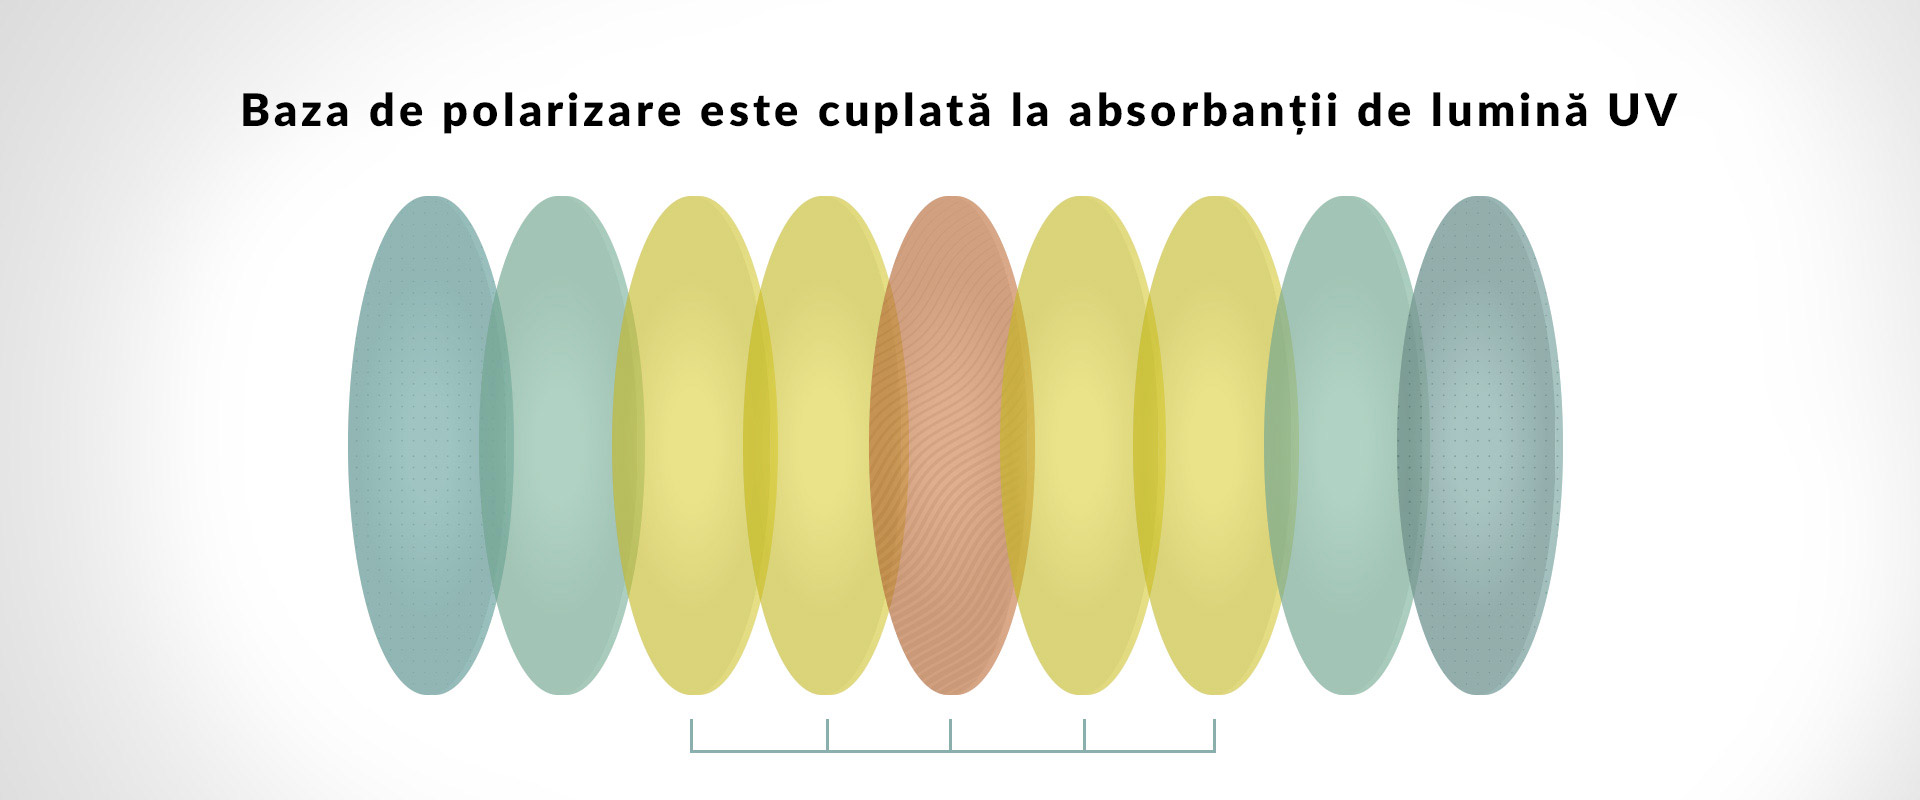 Baza de polarizare este asociată cu absorbanții de lumină UV